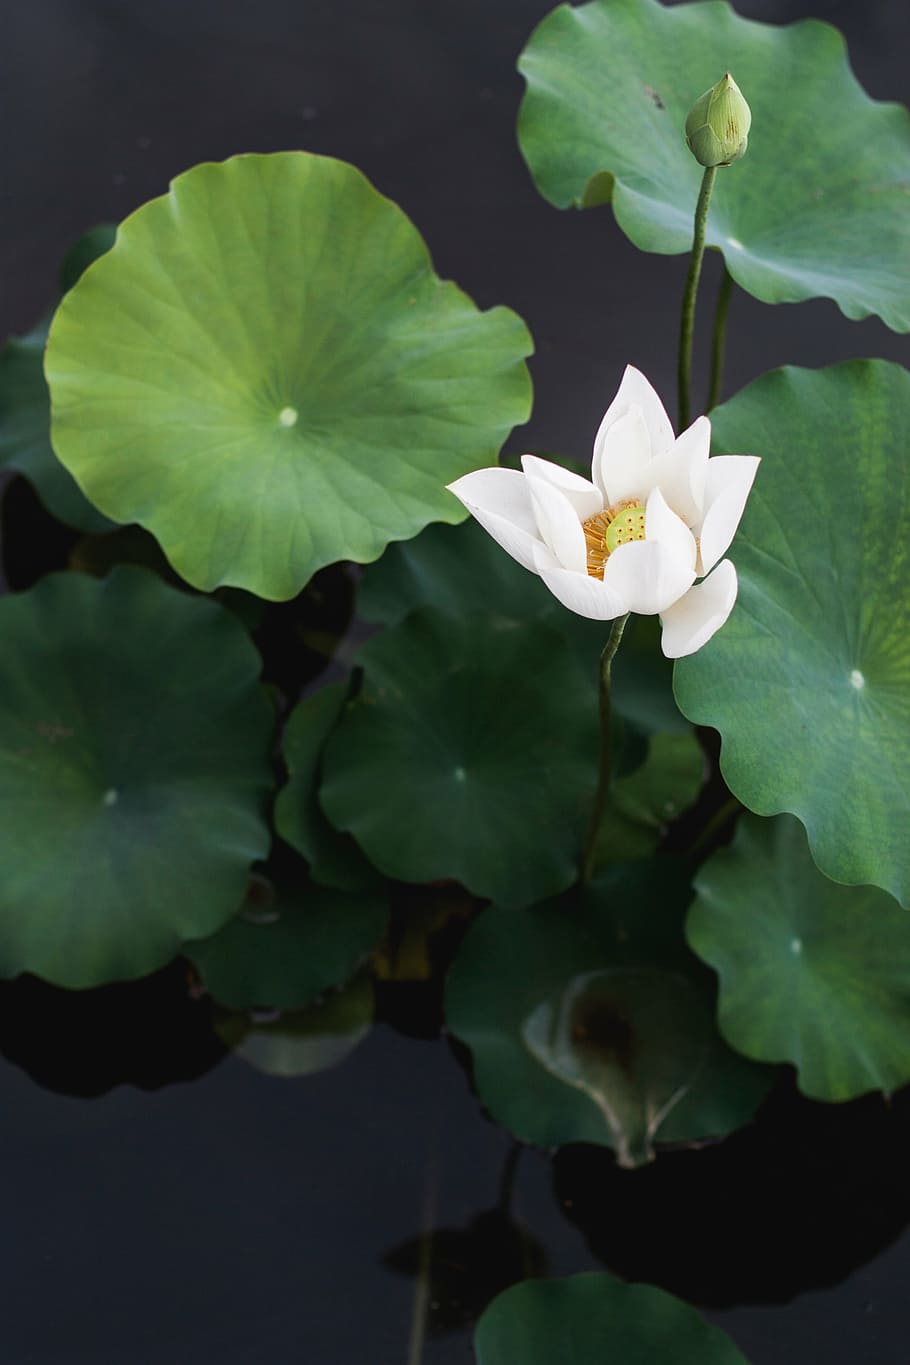 foto close-up, putih, bunga petaled, tenang, tubuh, air, closeup, lily, hijau, daun